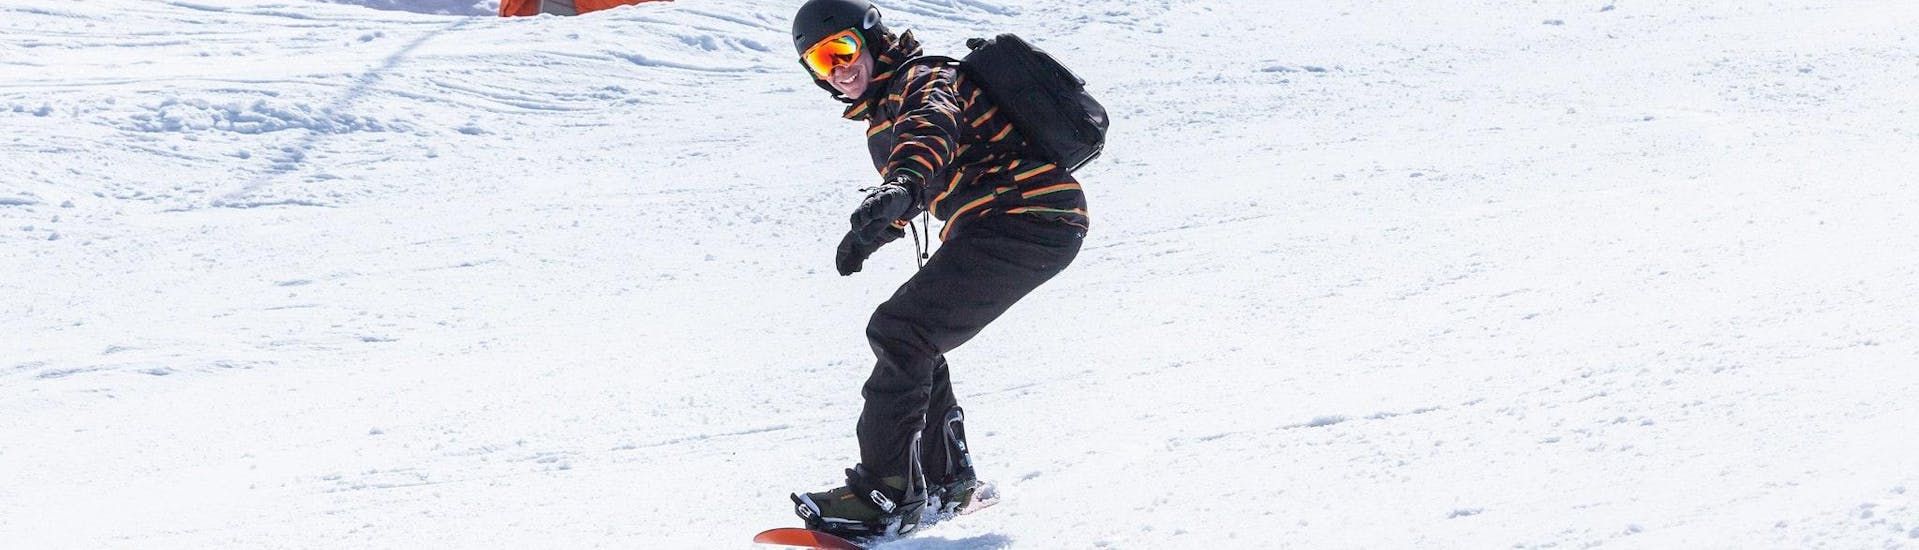 Cours particulier de snowboard dès 5 ans pour Tous niveaux.